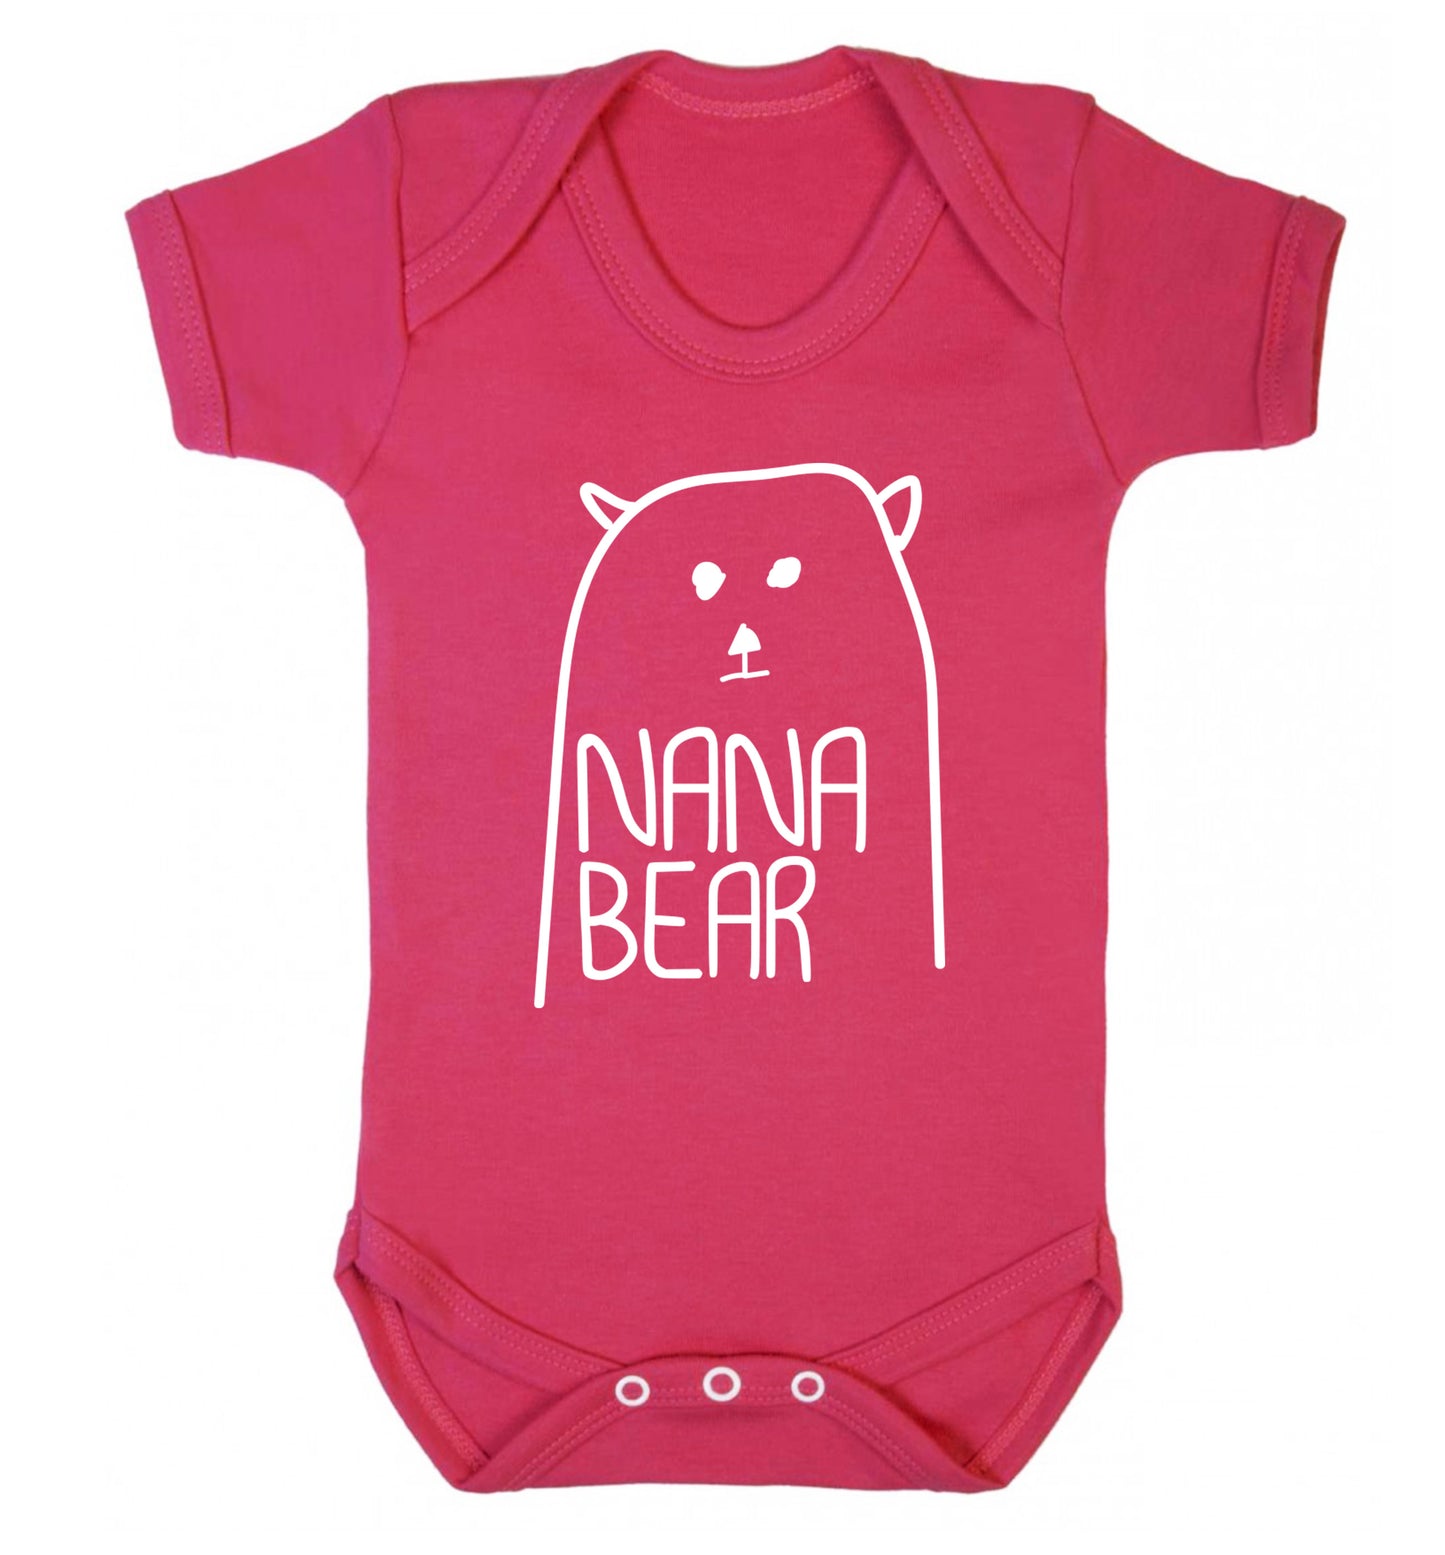 Nana bear Baby Vest dark pink 18-24 months